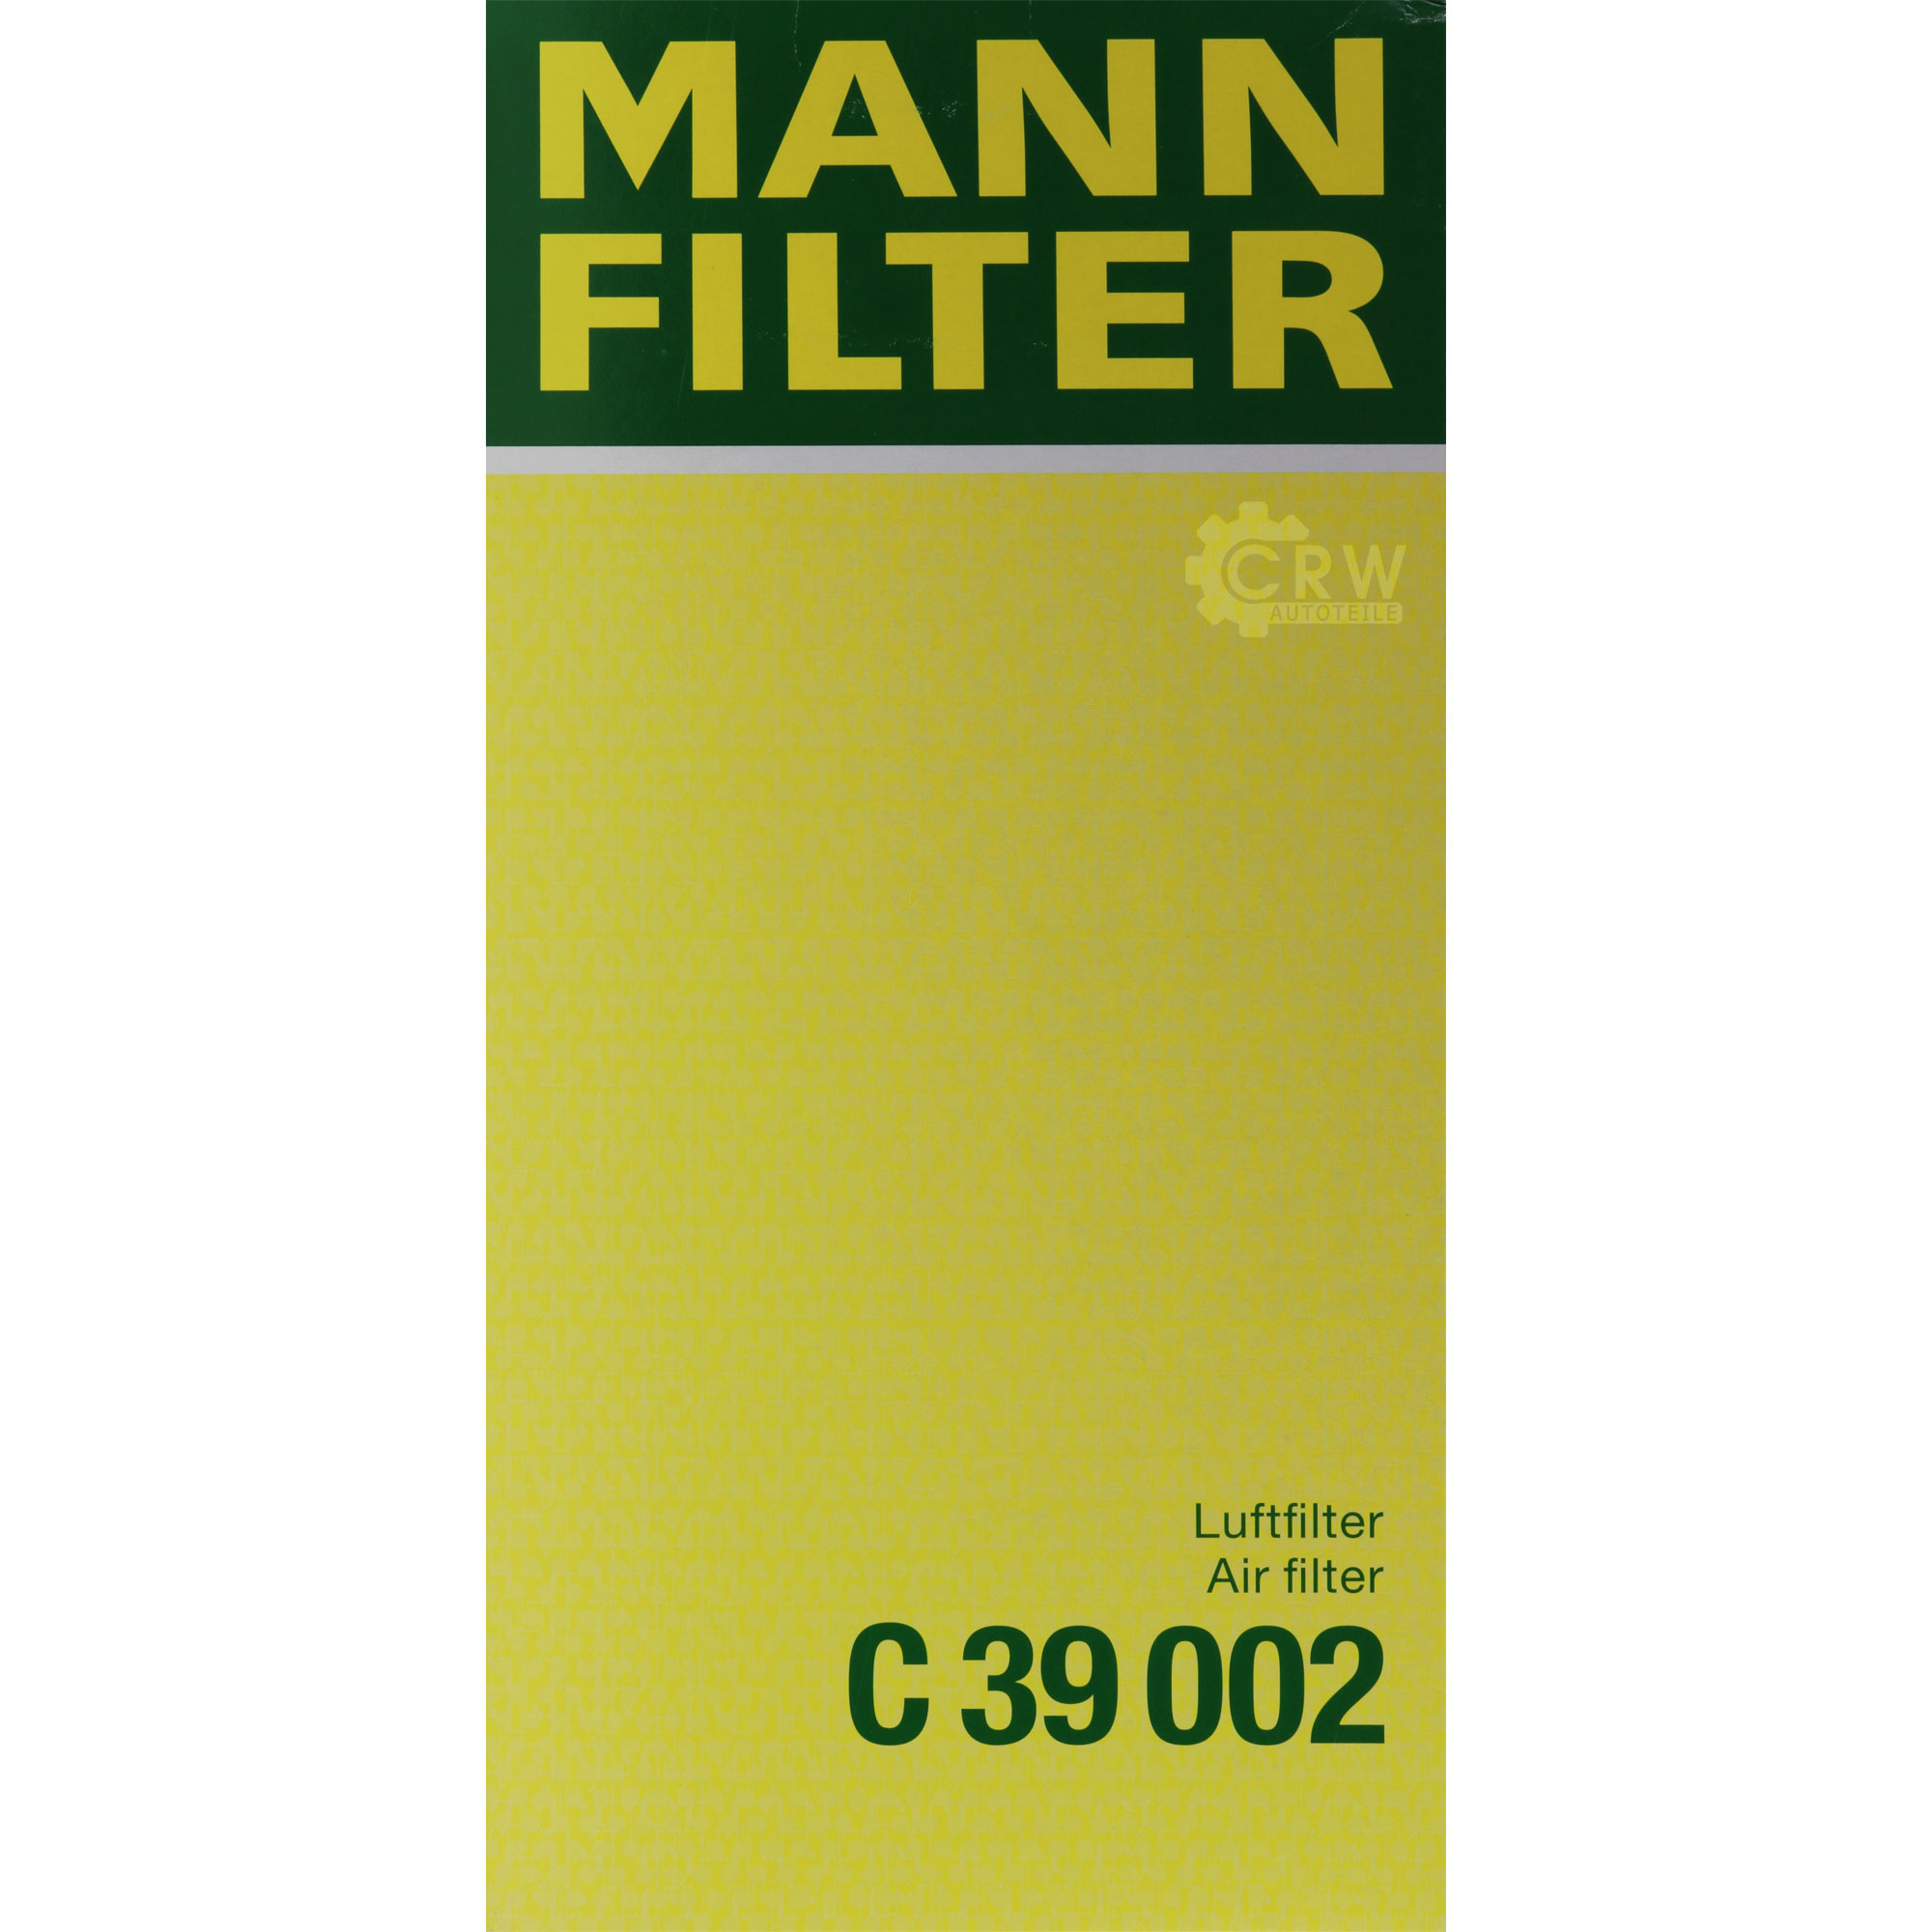 MANN-FILTER Luftfilter für VW Touareg 7P5 3.0 V6 TDI 4.2 V8 7LA 7L6 7L7 2.5